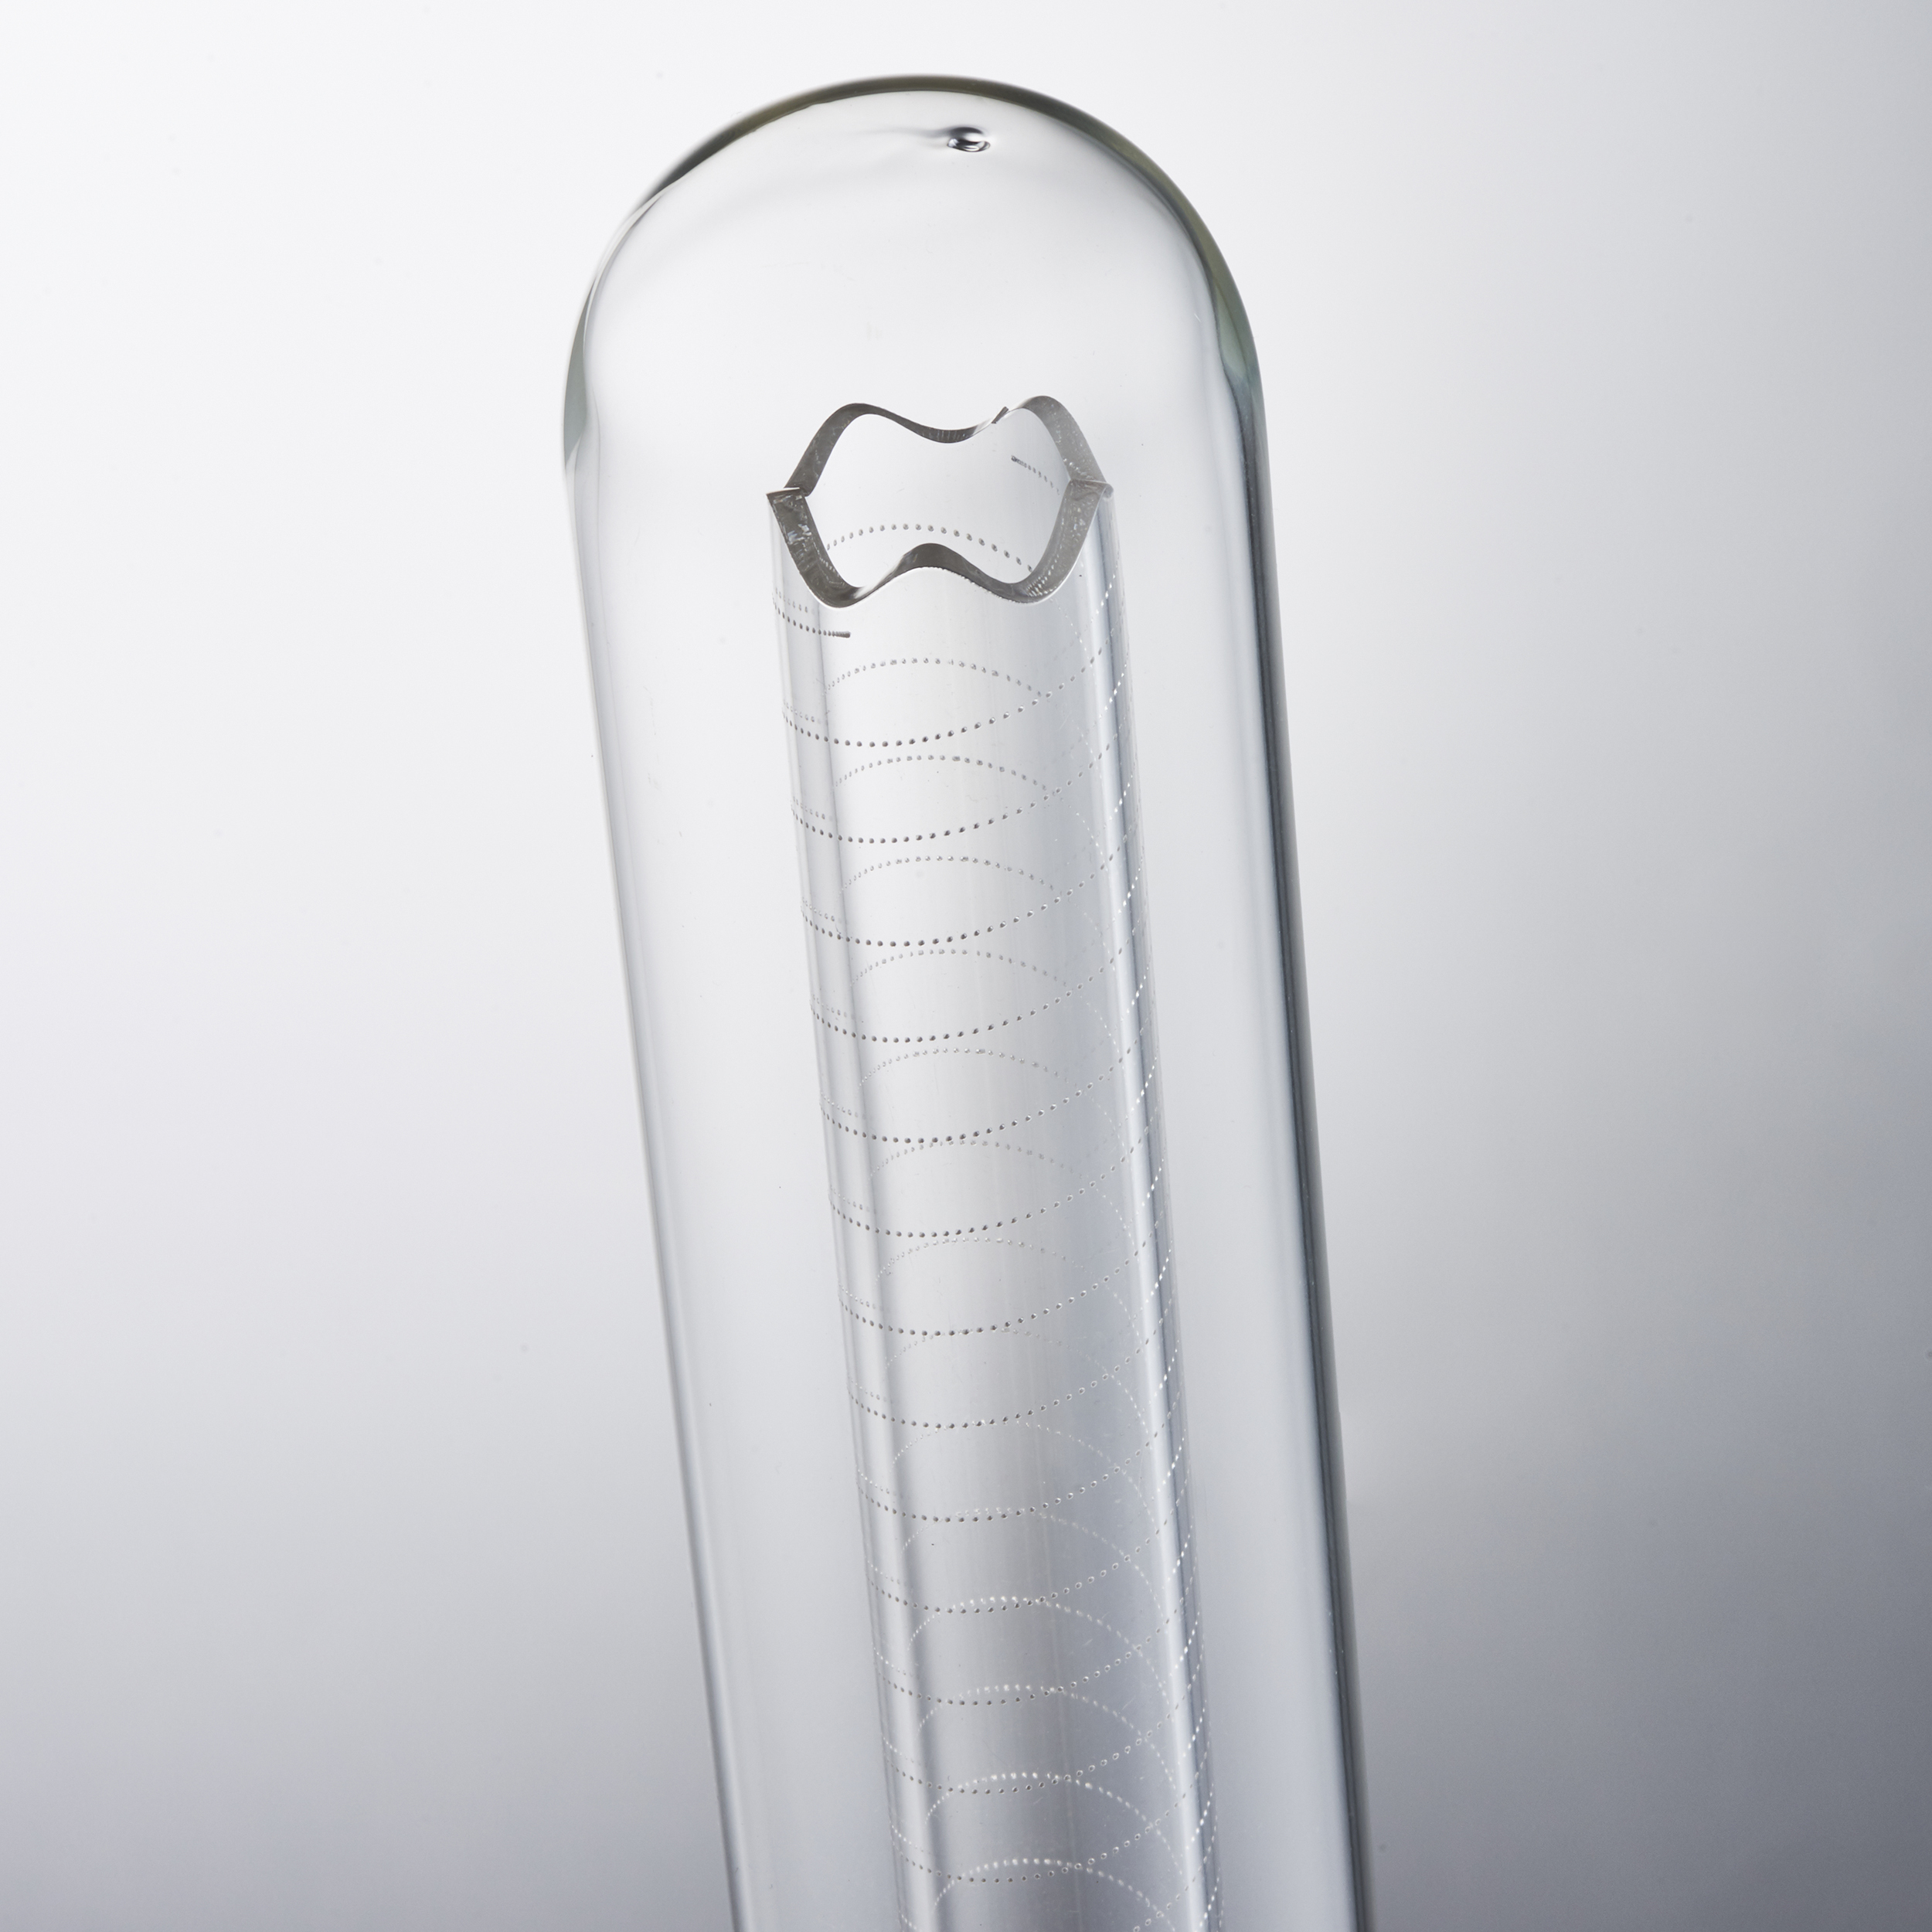 Leuchtmittel Filament Bulb transparent/warmweiß Glas/Metall